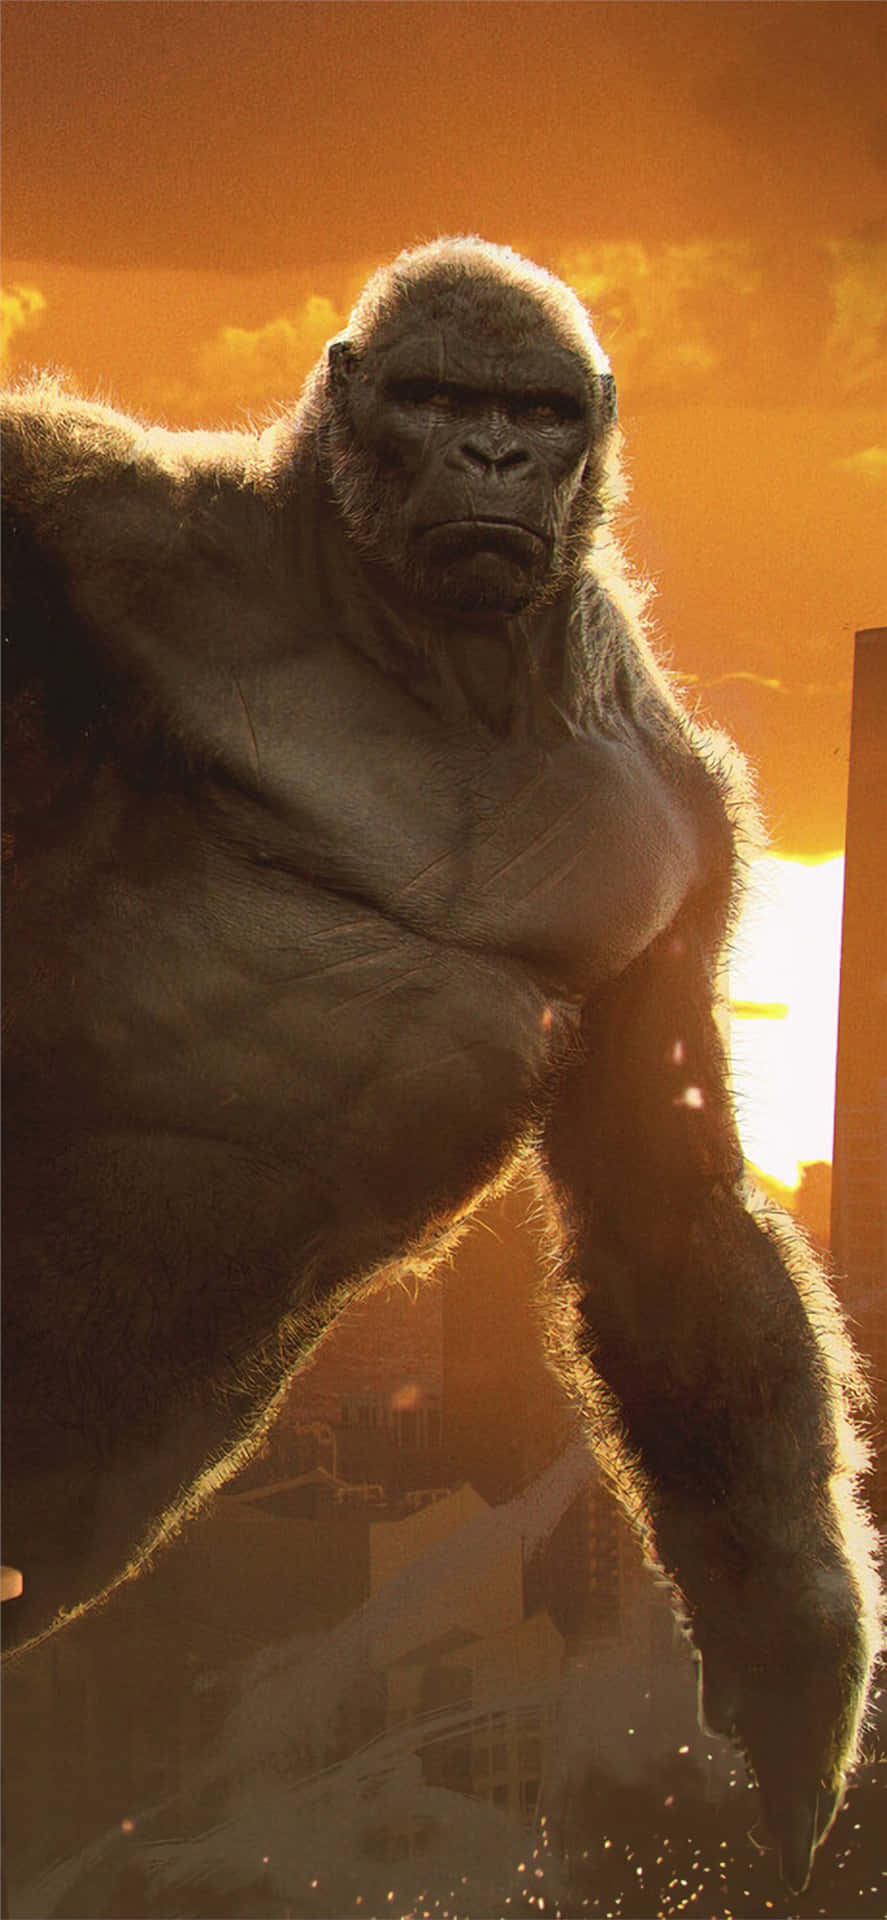 Fondode Pantalla De Gorilla Para Iphone Xs Max Con La Película King Kong.